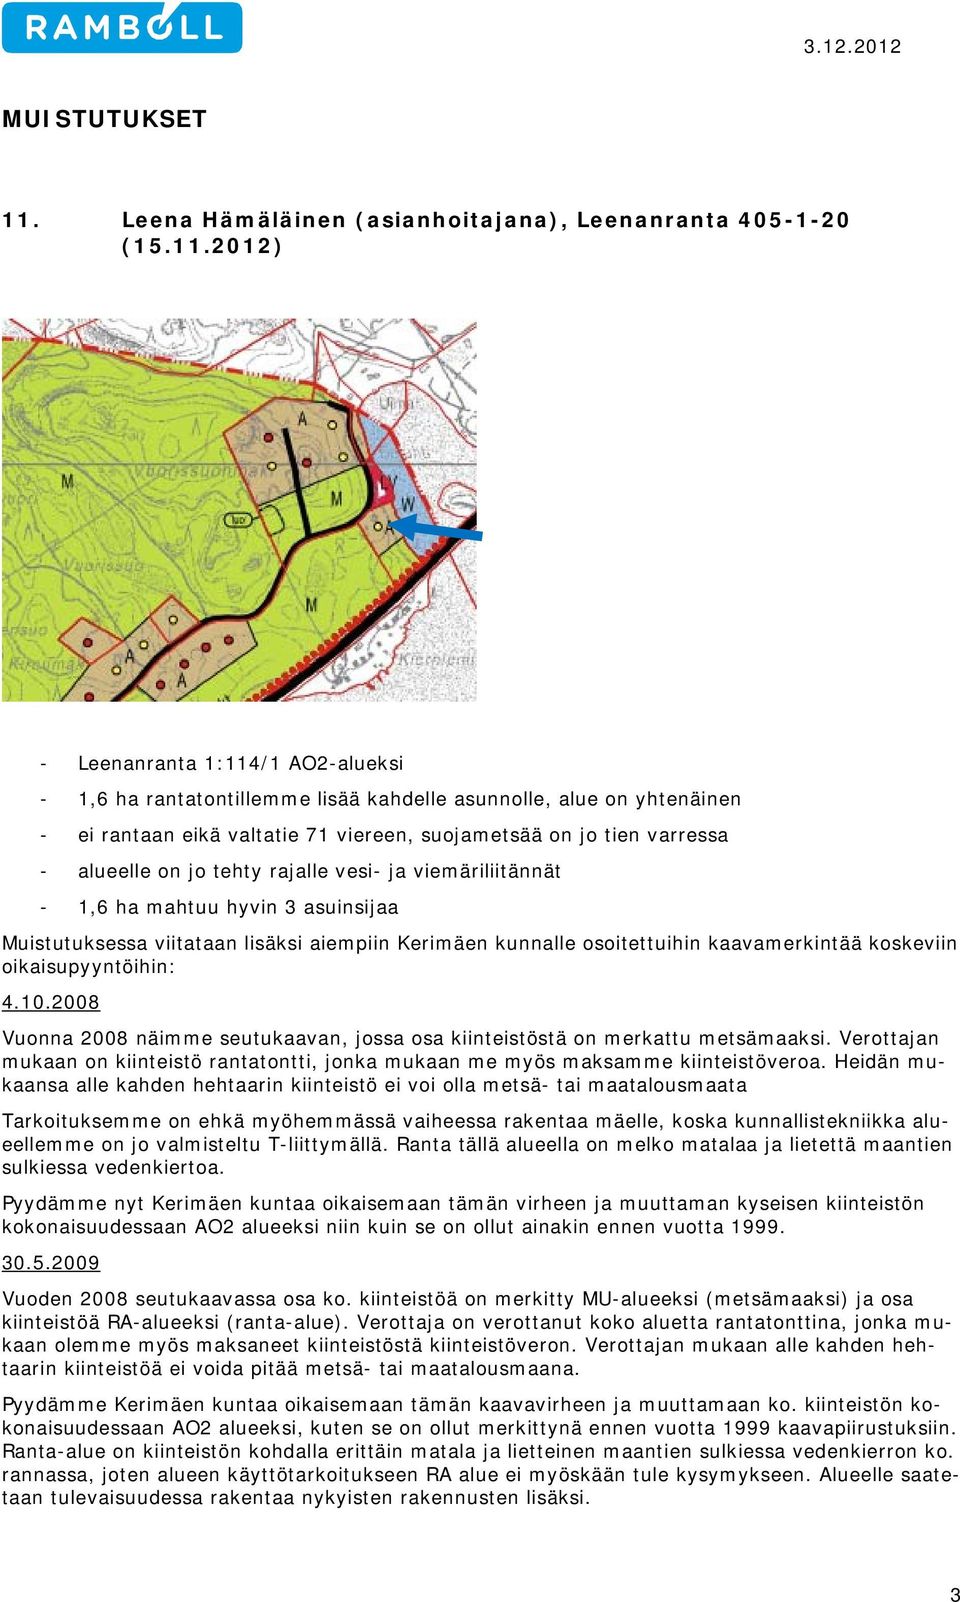 2012) - Leenanranta 1:114/1 AO2-alueksi - 1,6 ha rantatontillemme lisää kahdelle asunnolle, alue on yhtenäinen - ei rantaan eikä valtatie 71 viereen, suojametsää on jo tien varressa - alueelle on jo